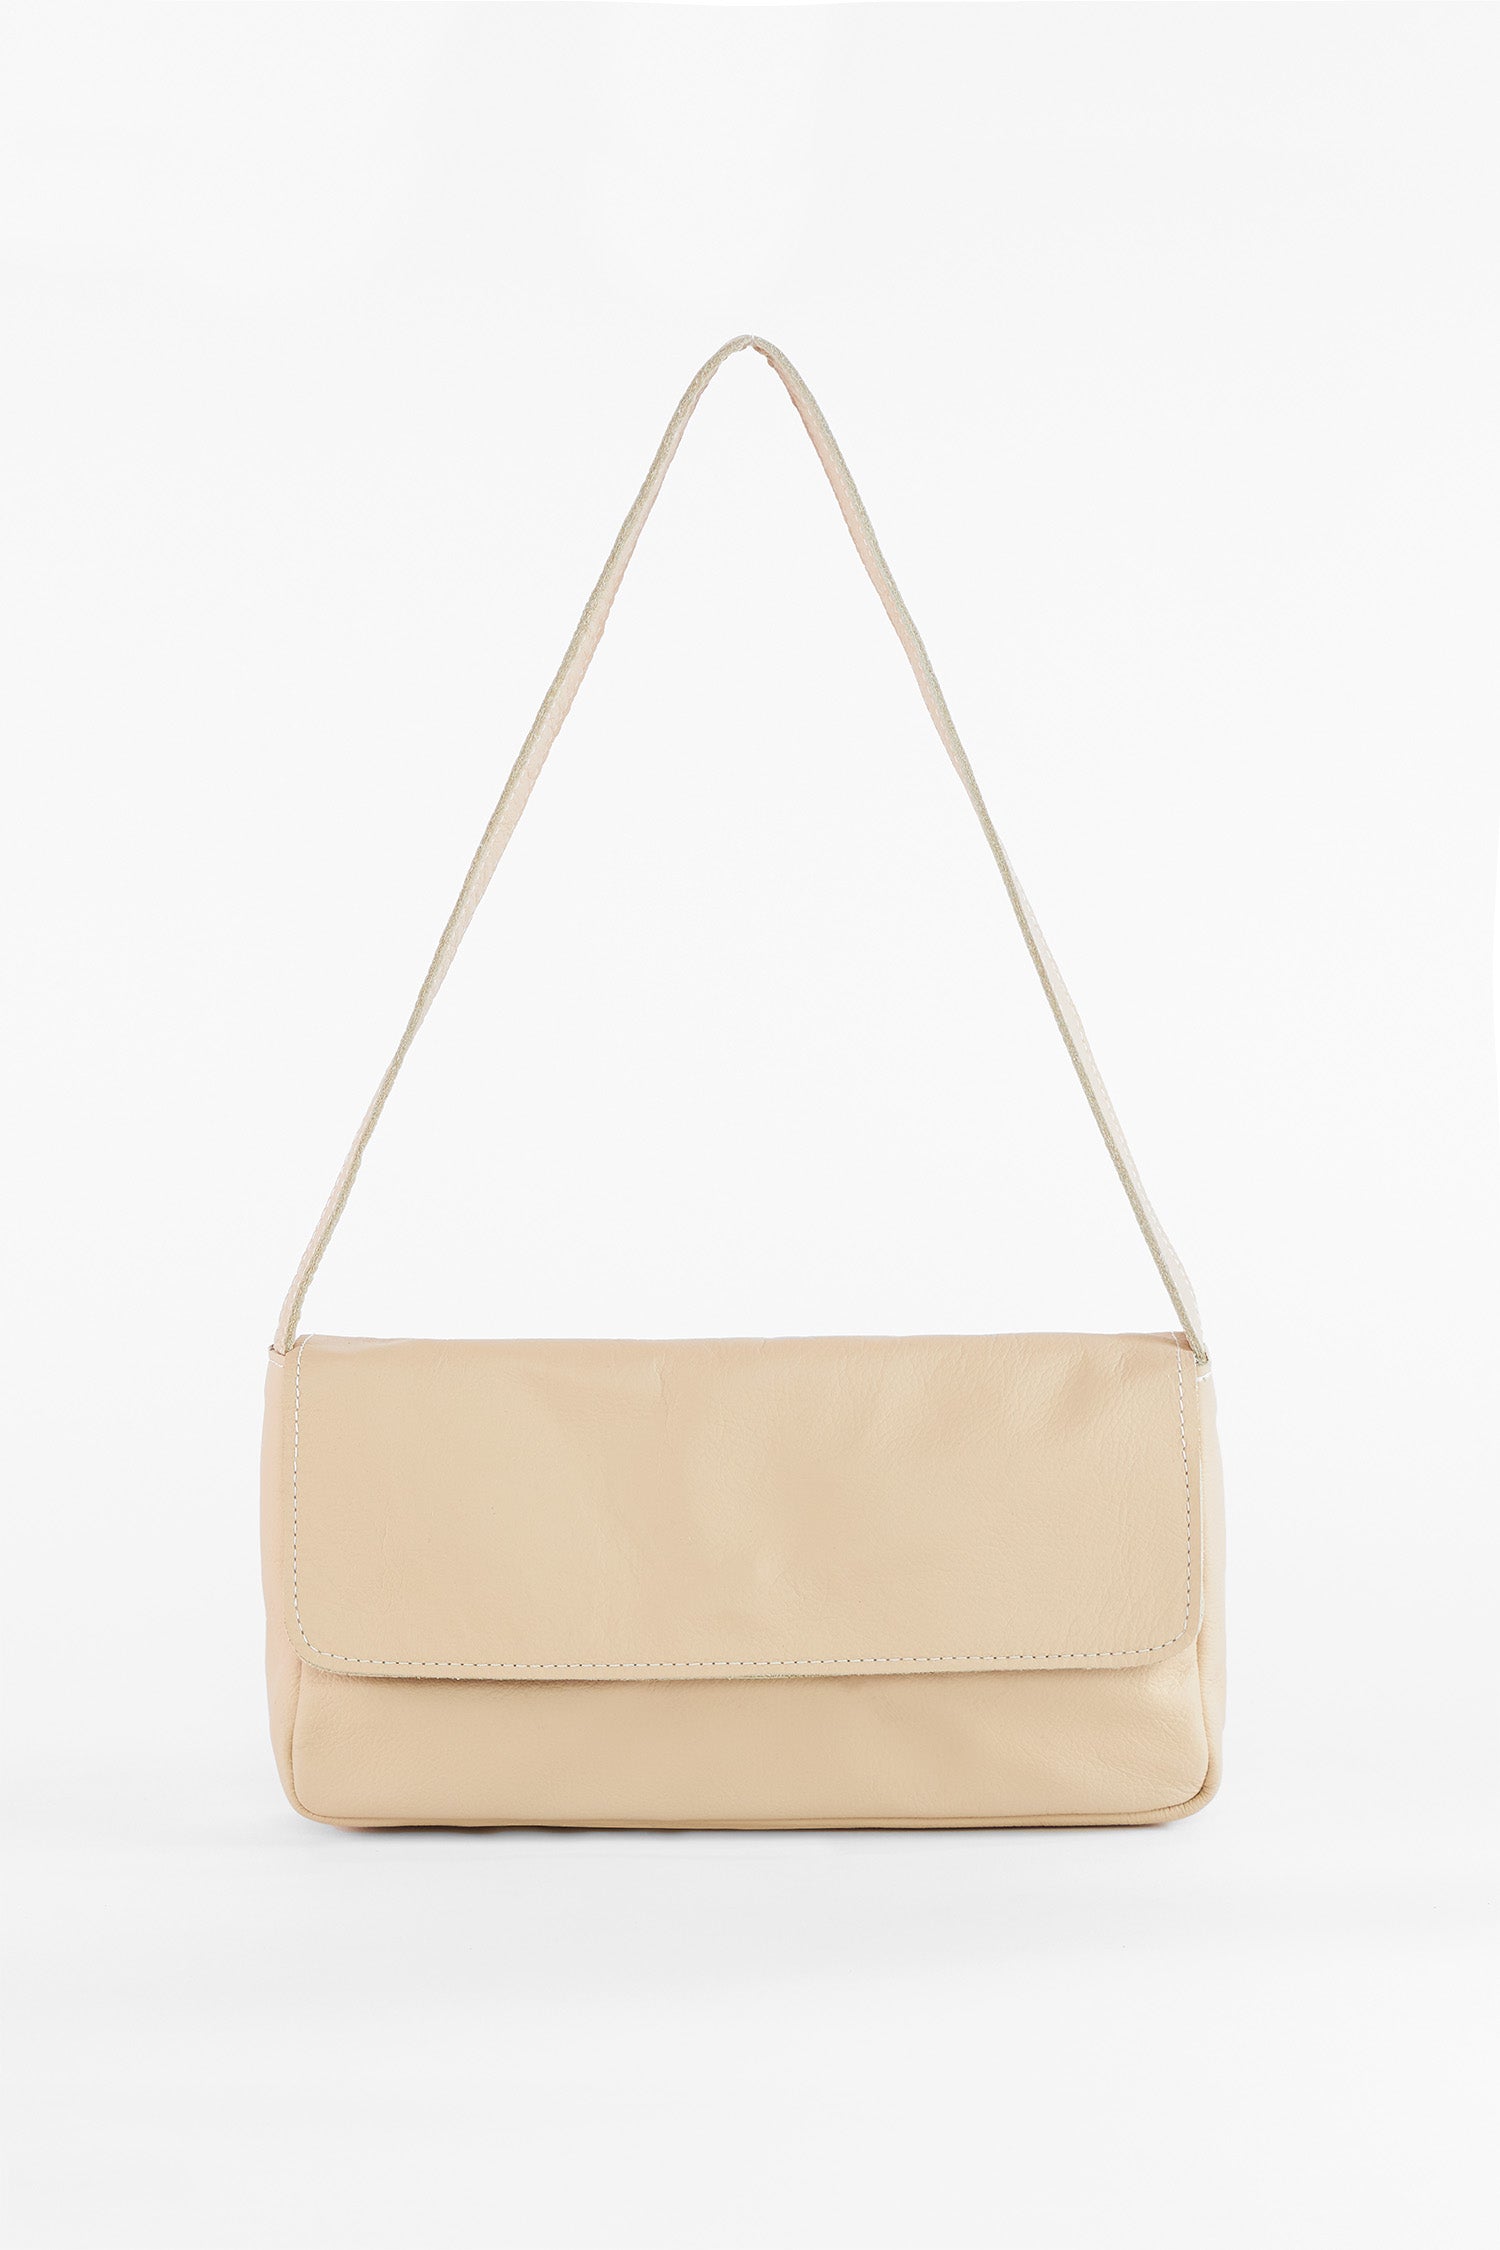 Brooklyn Casual Shoulder Bag, Shoulder bags